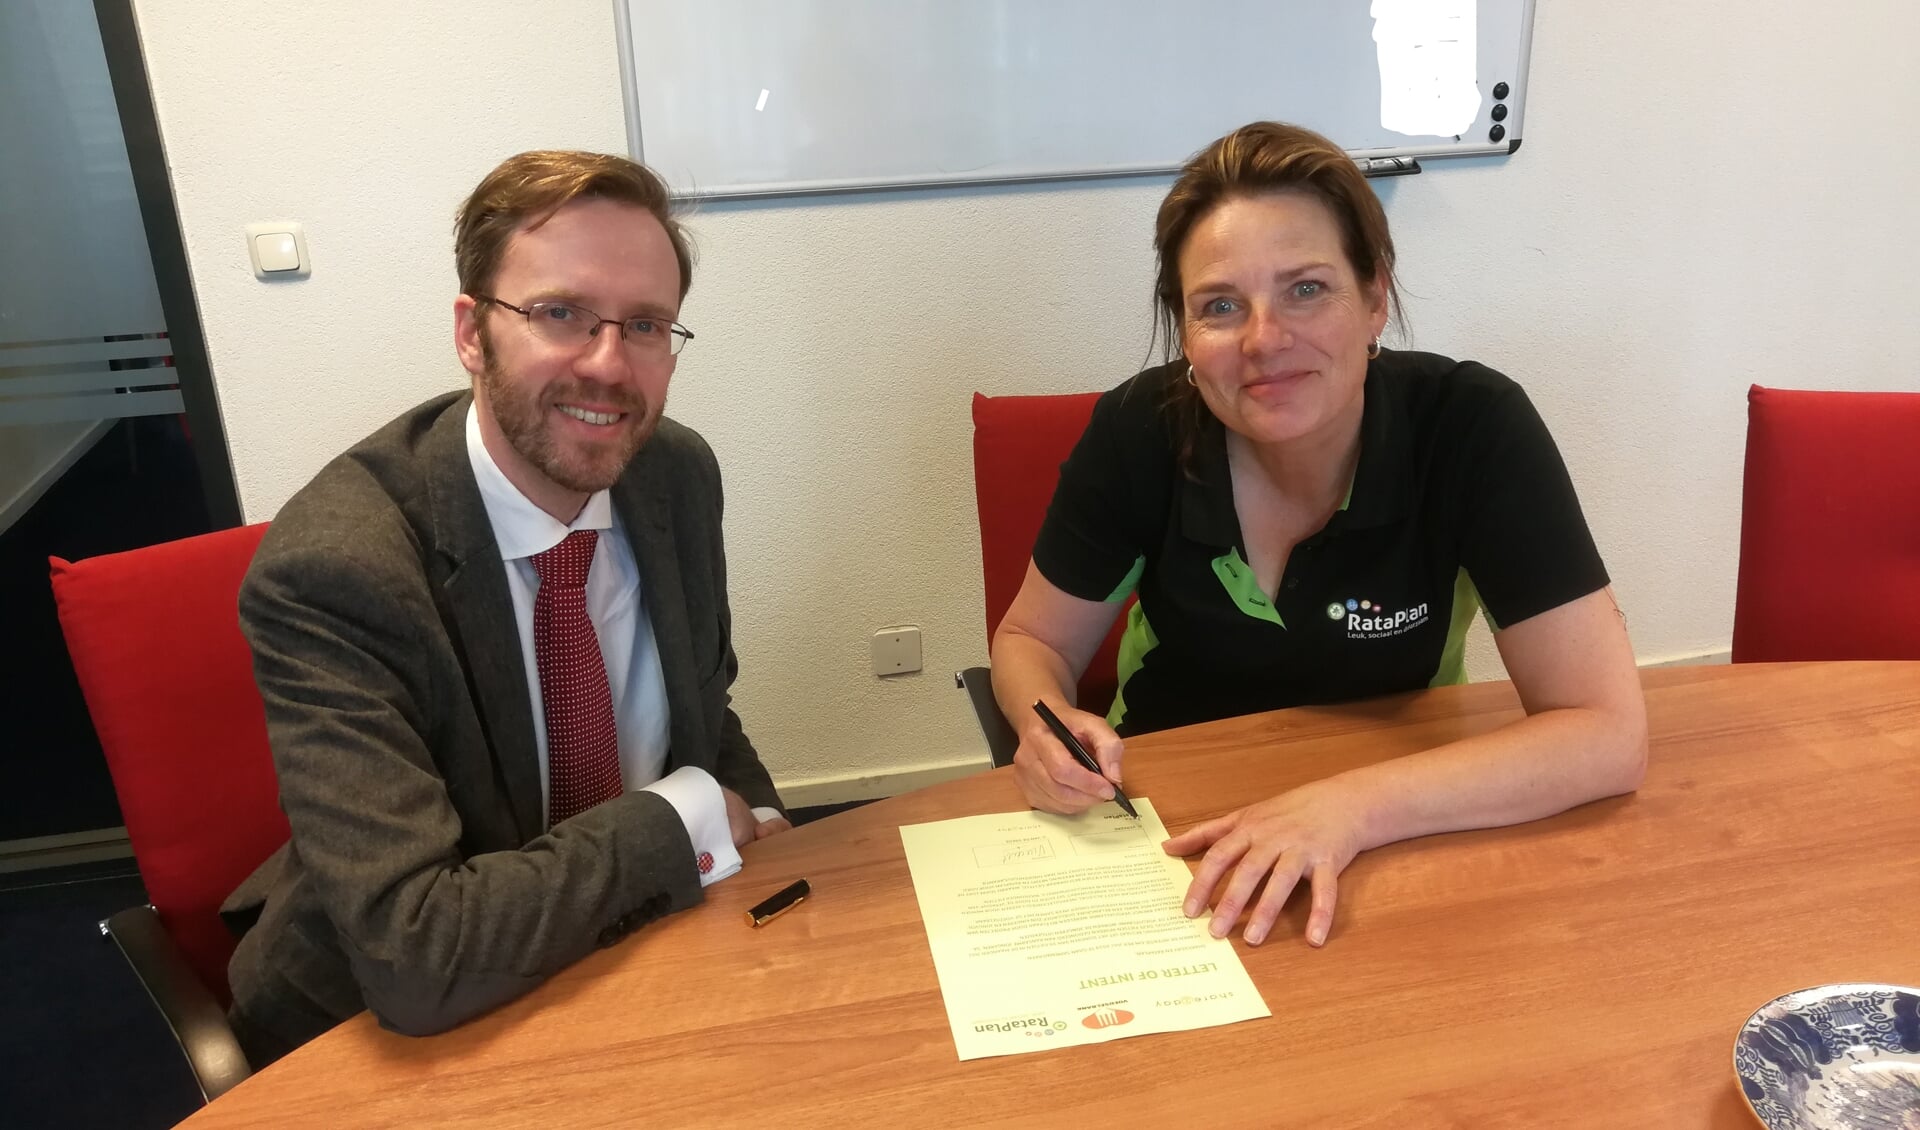 Vincent van Share2day en Heleen van Rataplan ondertekenen overeenkomst. 